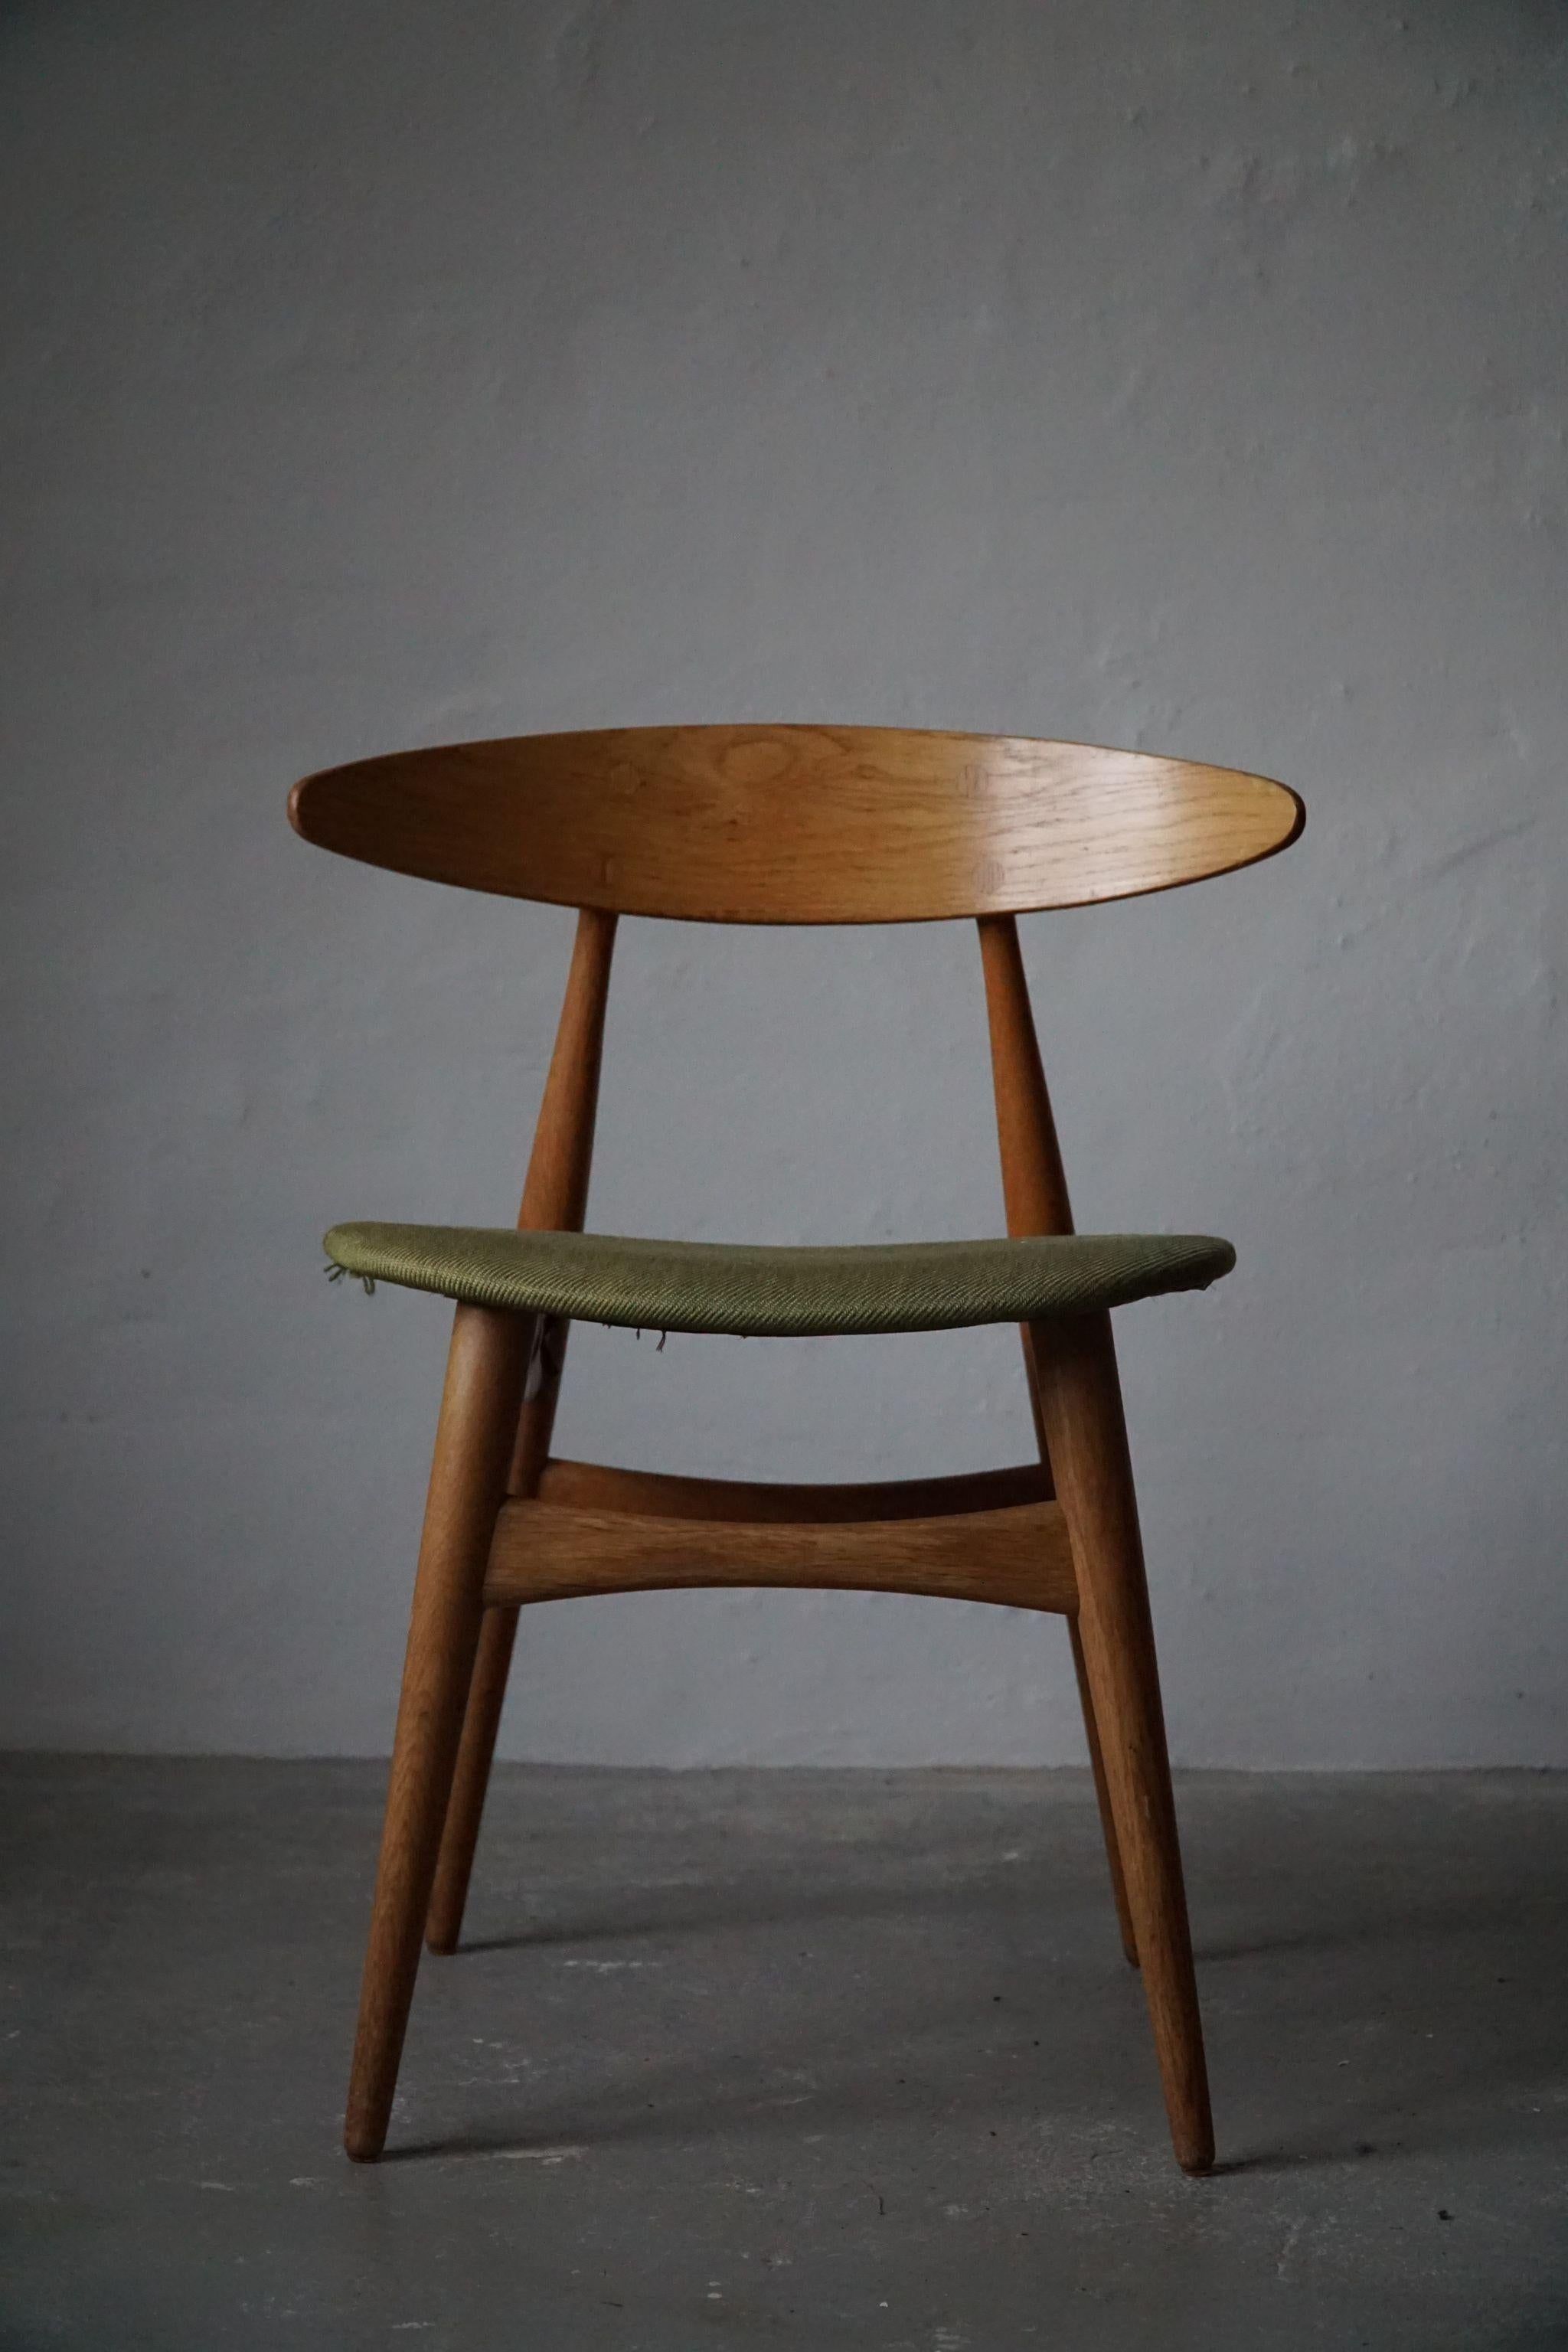 Dining chair by Hans J. Wegner, model 